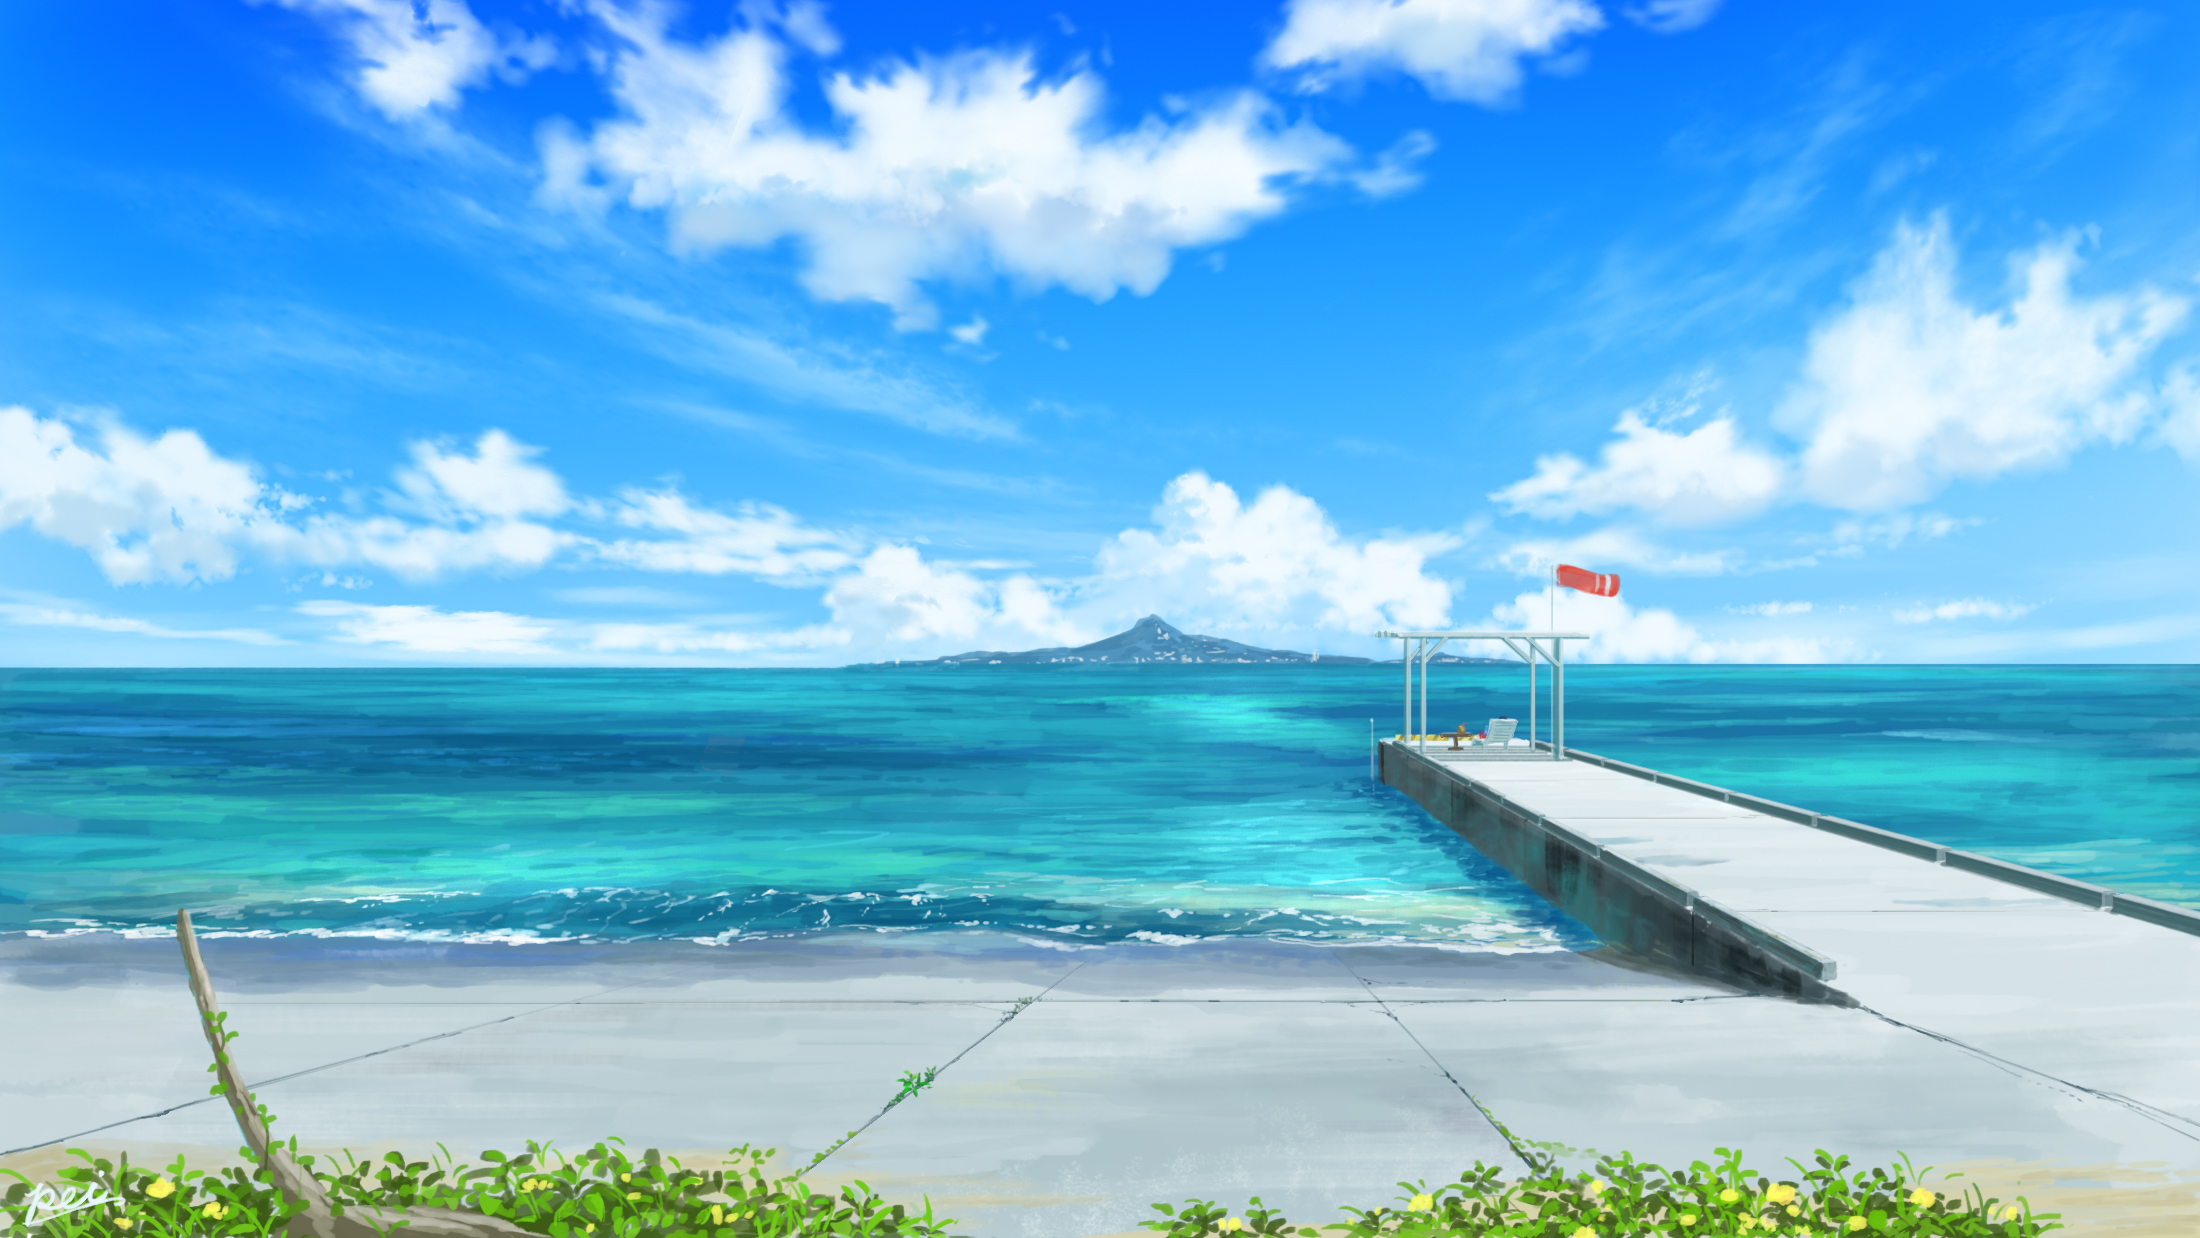 Download mobile wallpaper Anime, Sky, Ocean, Original for free.